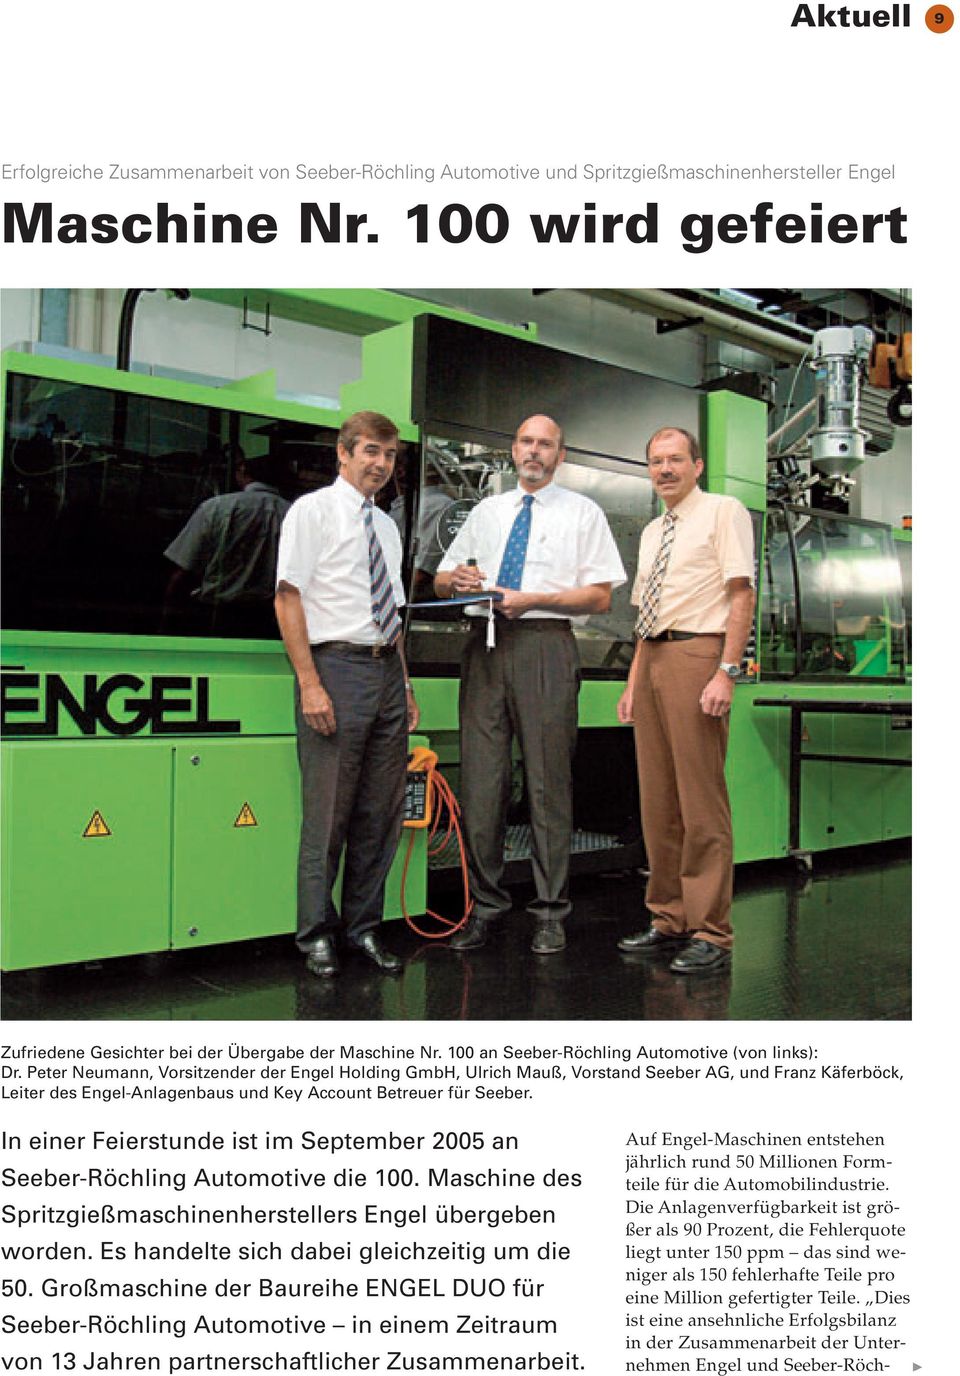 Peter Neumann, Vorsitzender der Engel Holding GmbH, Ulrich Mauß, Vorstand Seeber AG, und Franz Käferböck, Leiter des Engel-Anlagenbaus und Key Account Betreuer für Seeber.